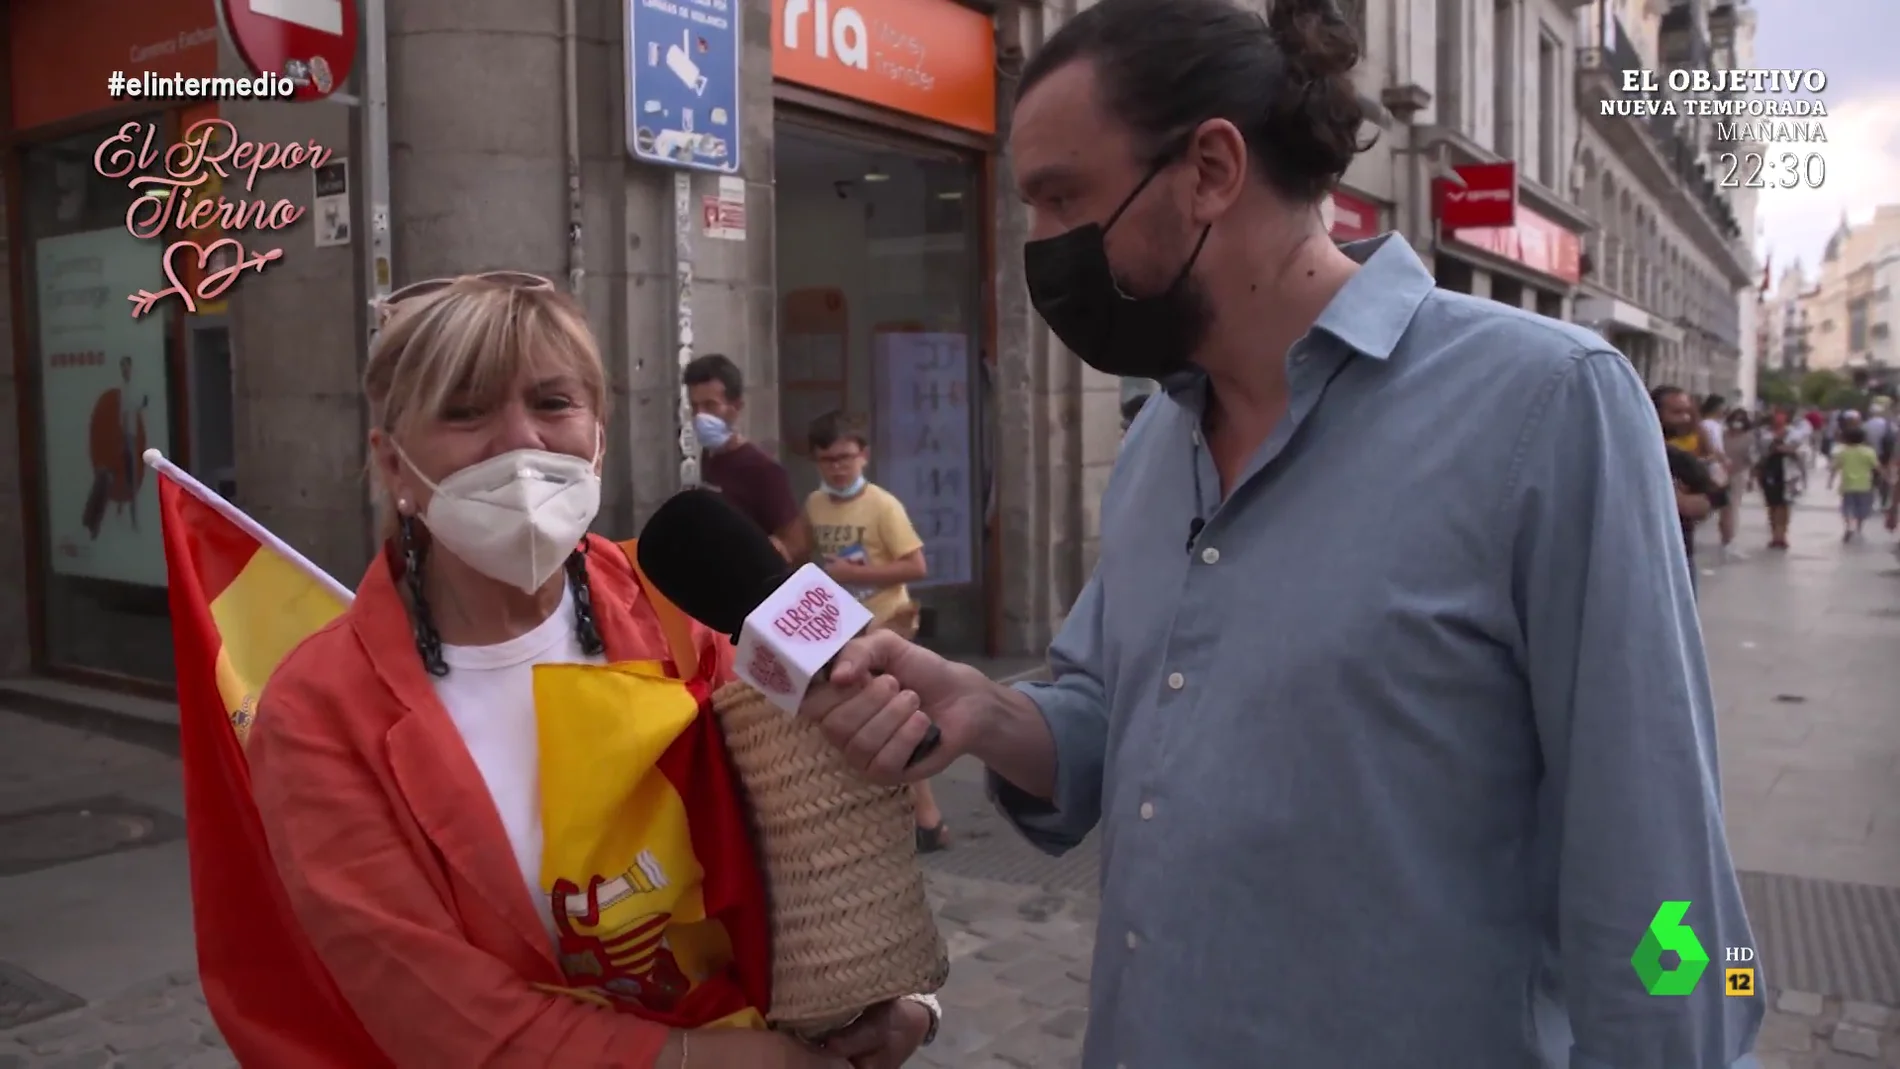 Una mujer comienza a llorar en pleno reportaje de El Intermedio al recordar que Sánchez es presidente: "España me duele"